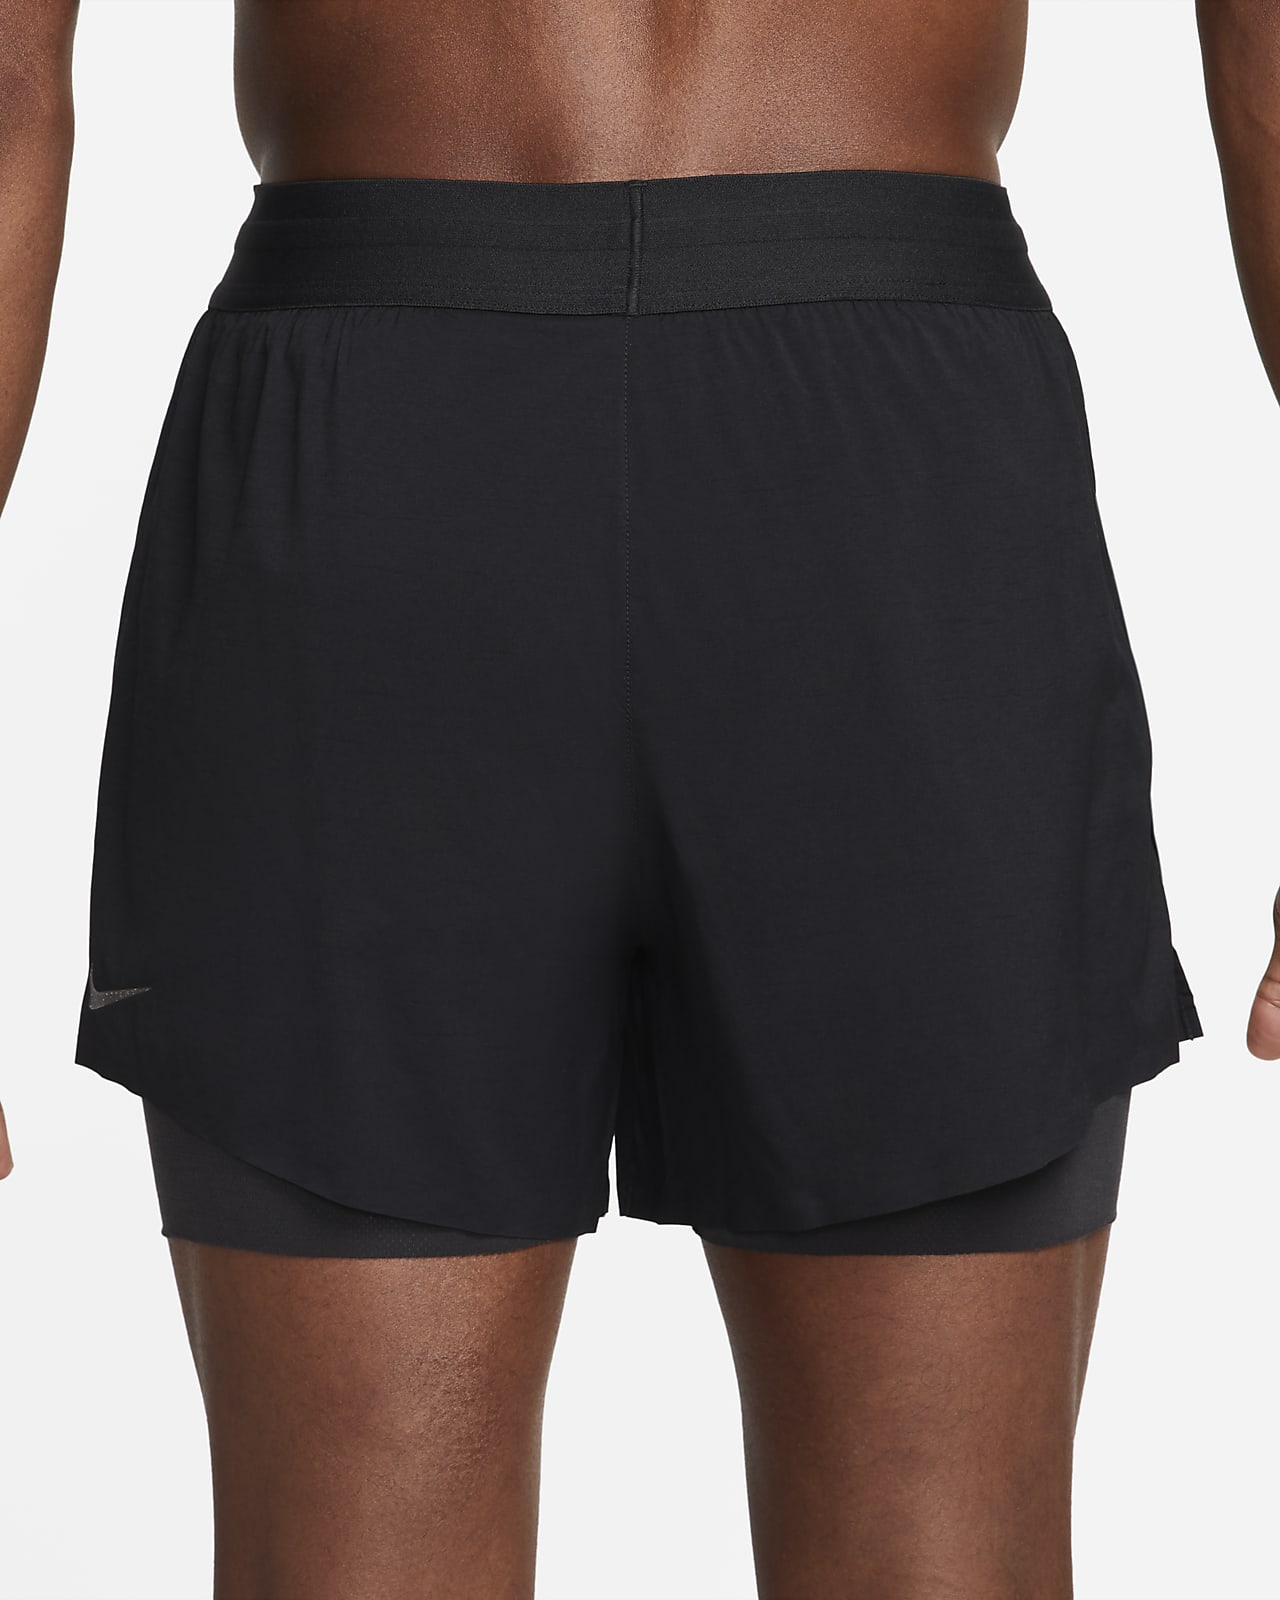 Nike Yoga Men's Hot Yoga Shorts. Nike LU